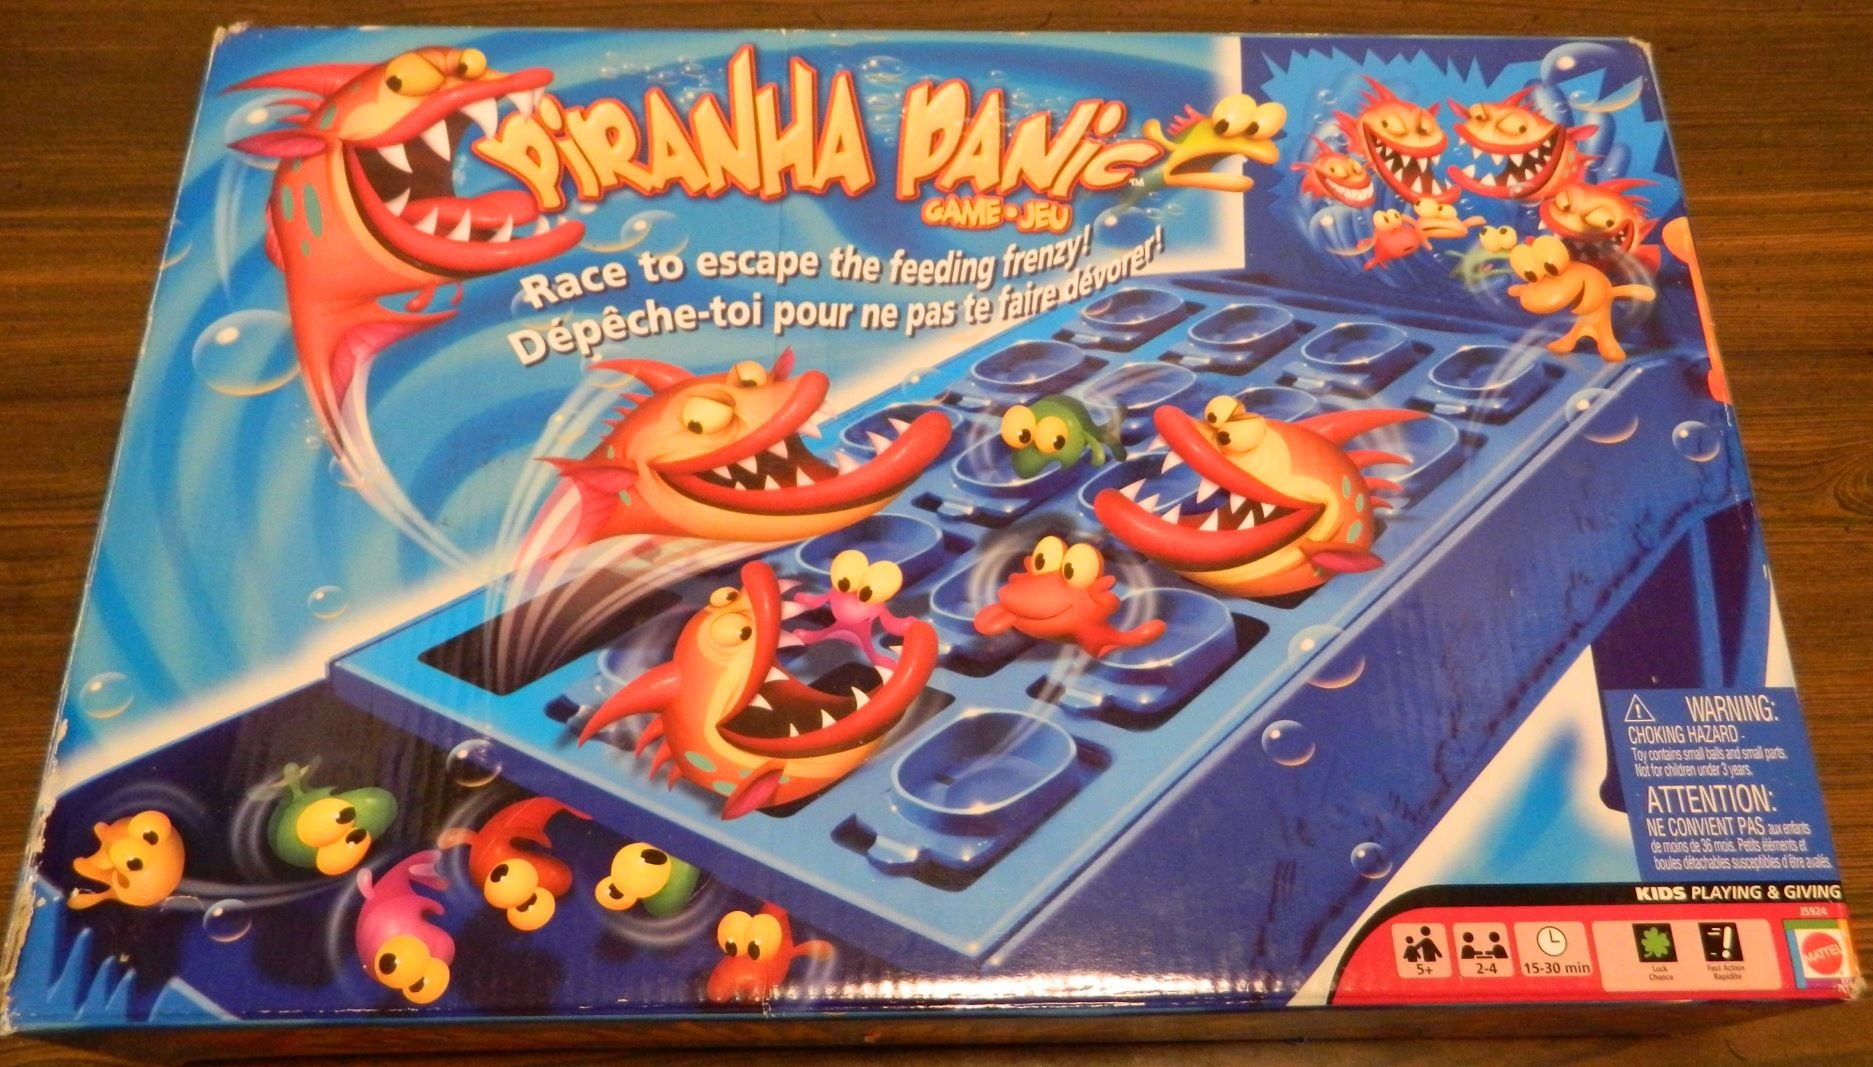 Box for Piranha Panic